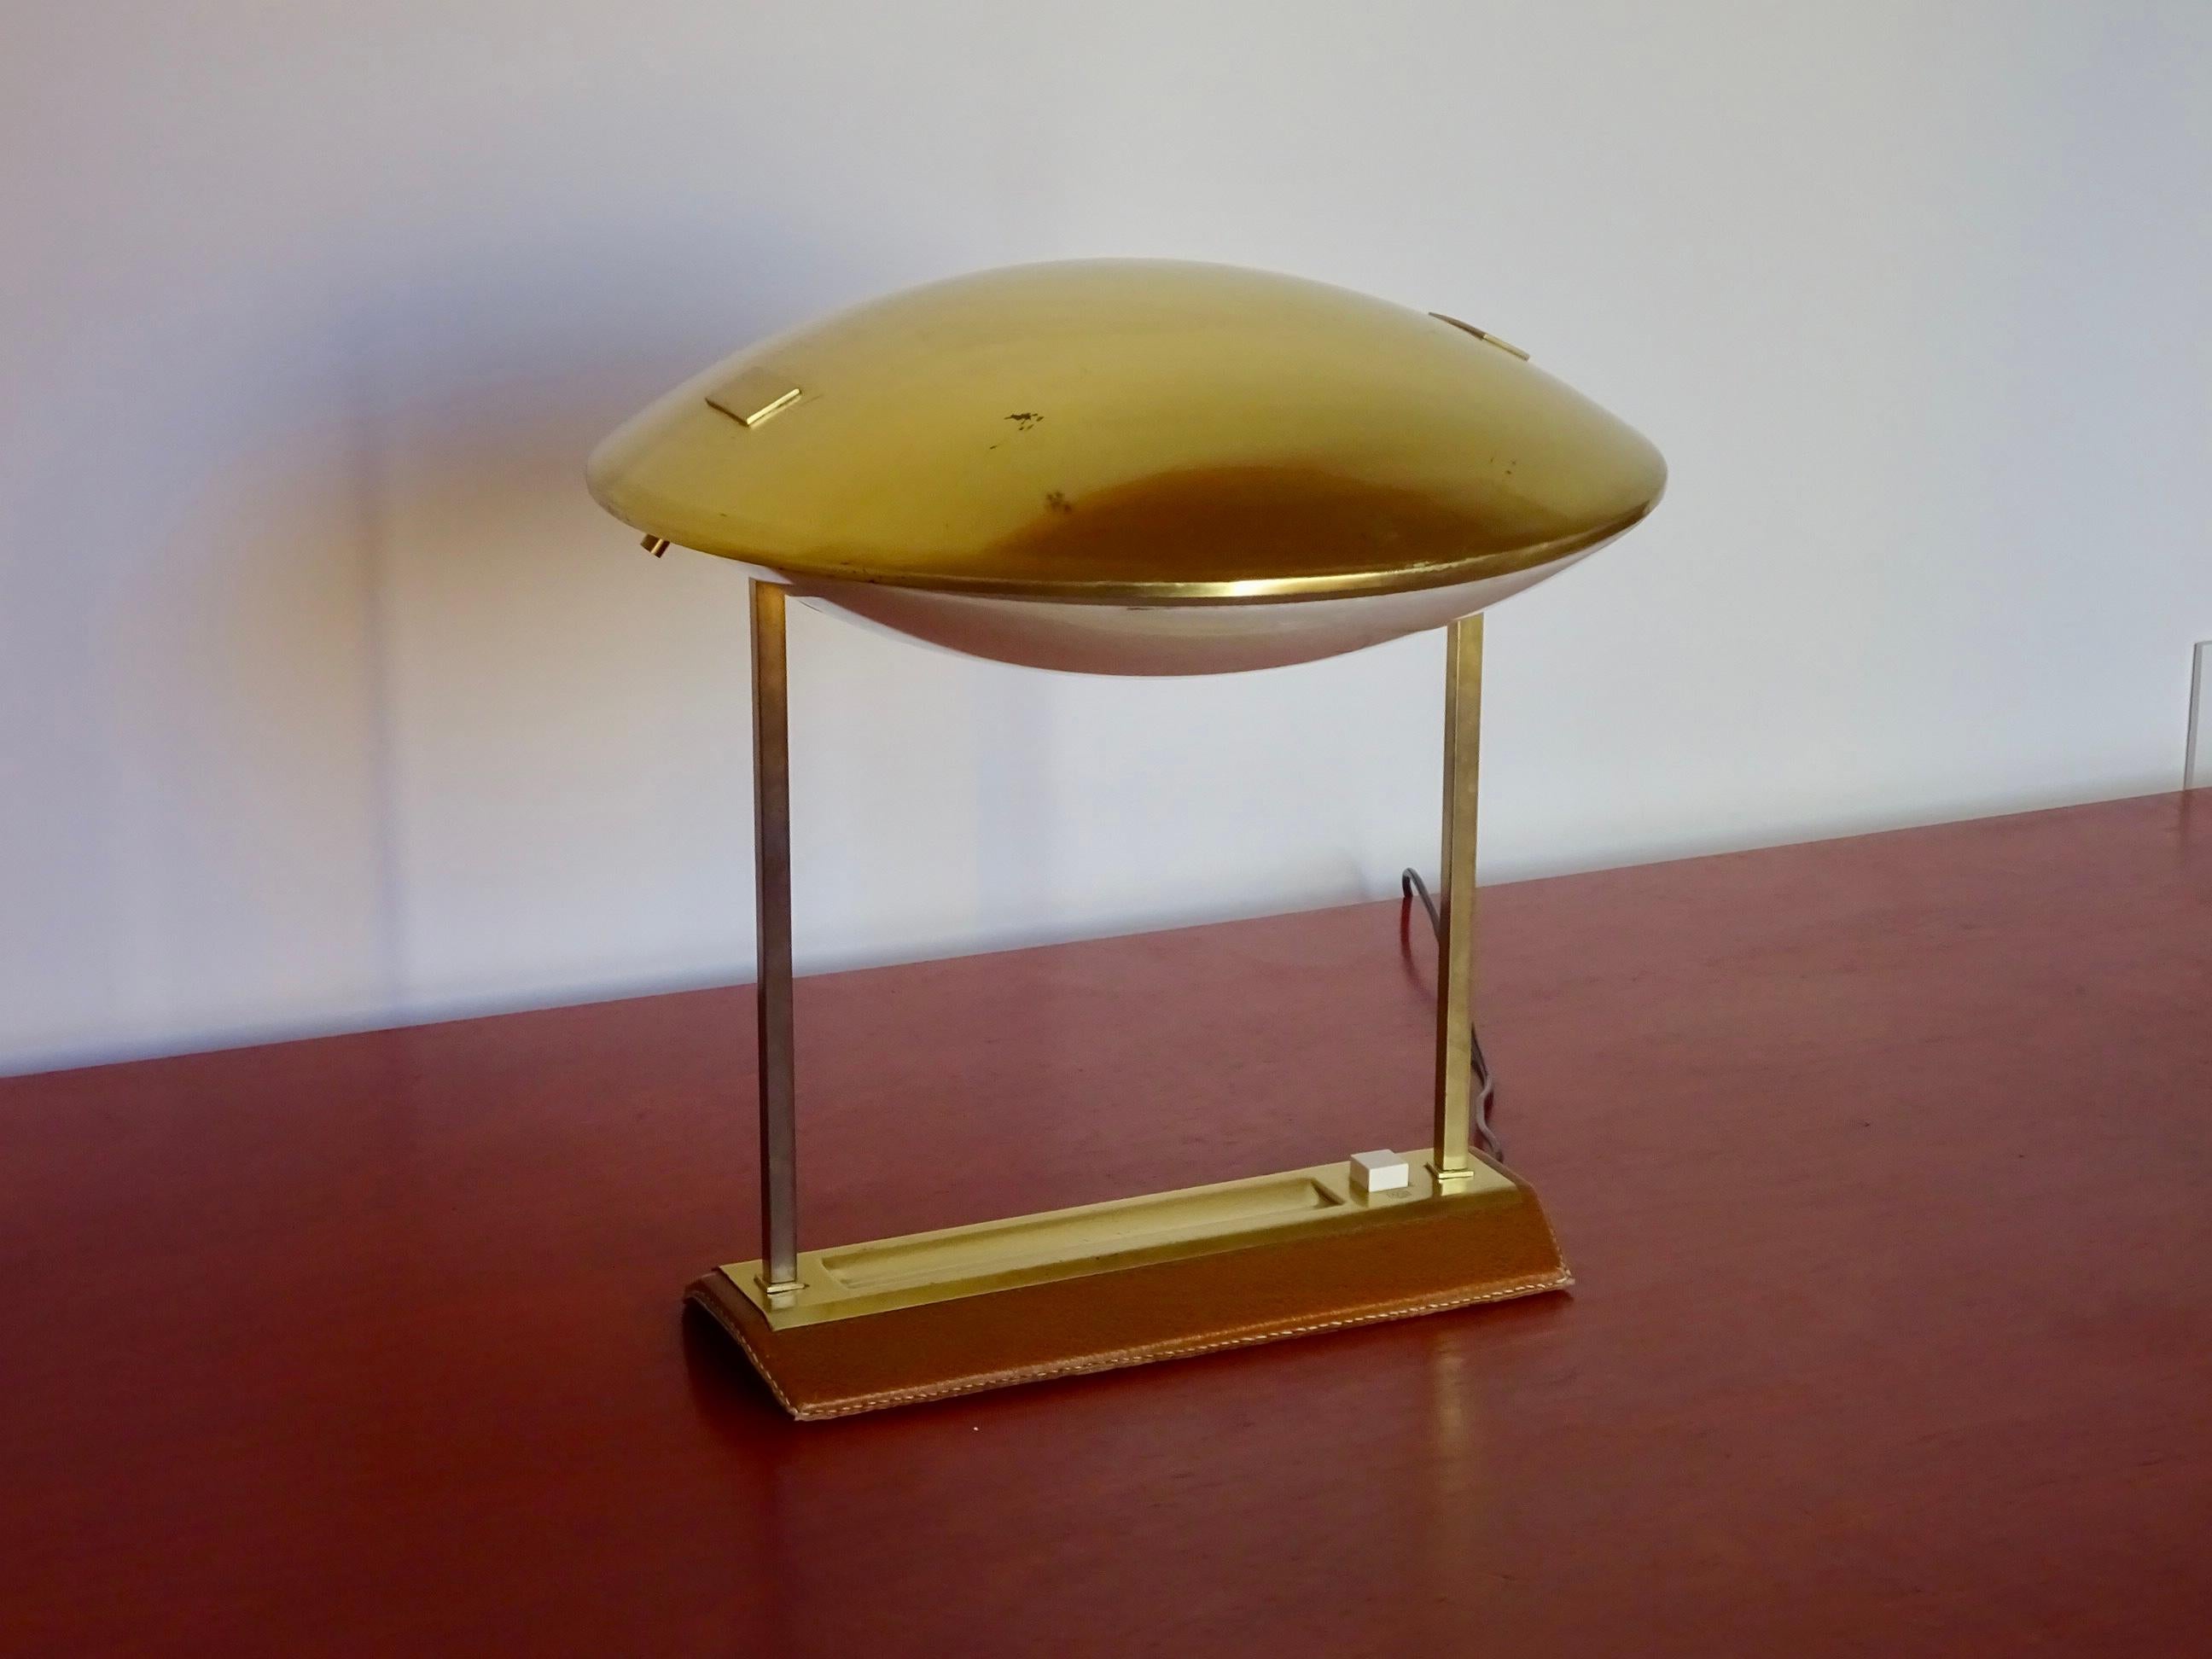 Lampe de table à orientation réglable. Modèle 8050 conçu par Stilnovo au début des années 60 et également produit par Metalarte. Avec une base rectangulaire en cuir brun et une structure métallique dorée qui forme un porche supportant un dôme